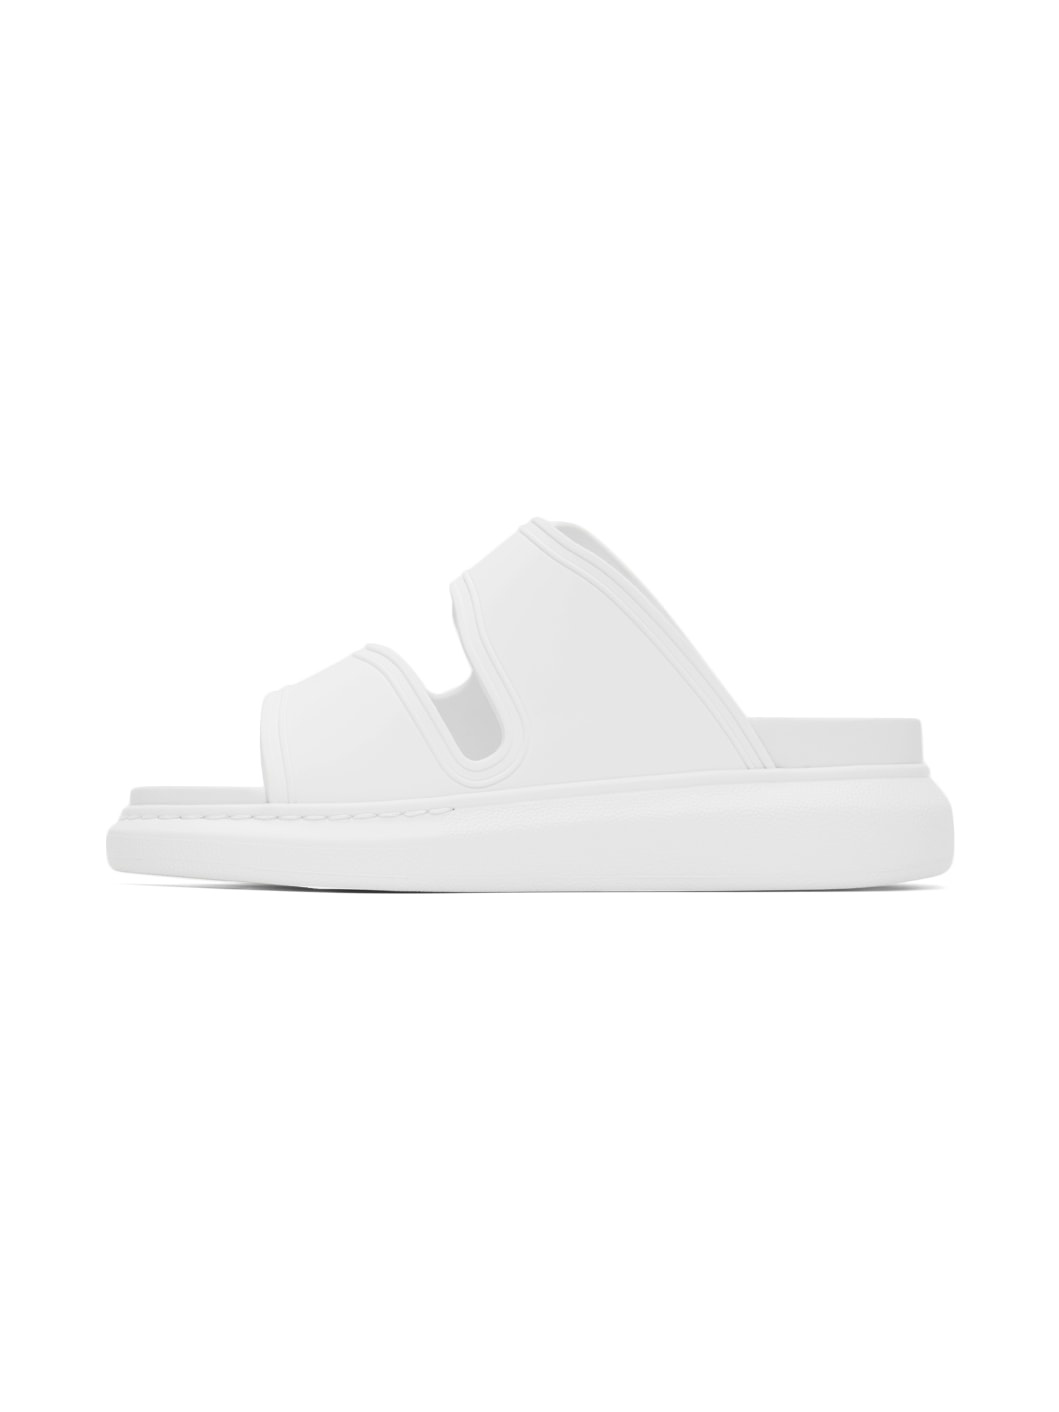 White Hybrid Slide Sandals - 3